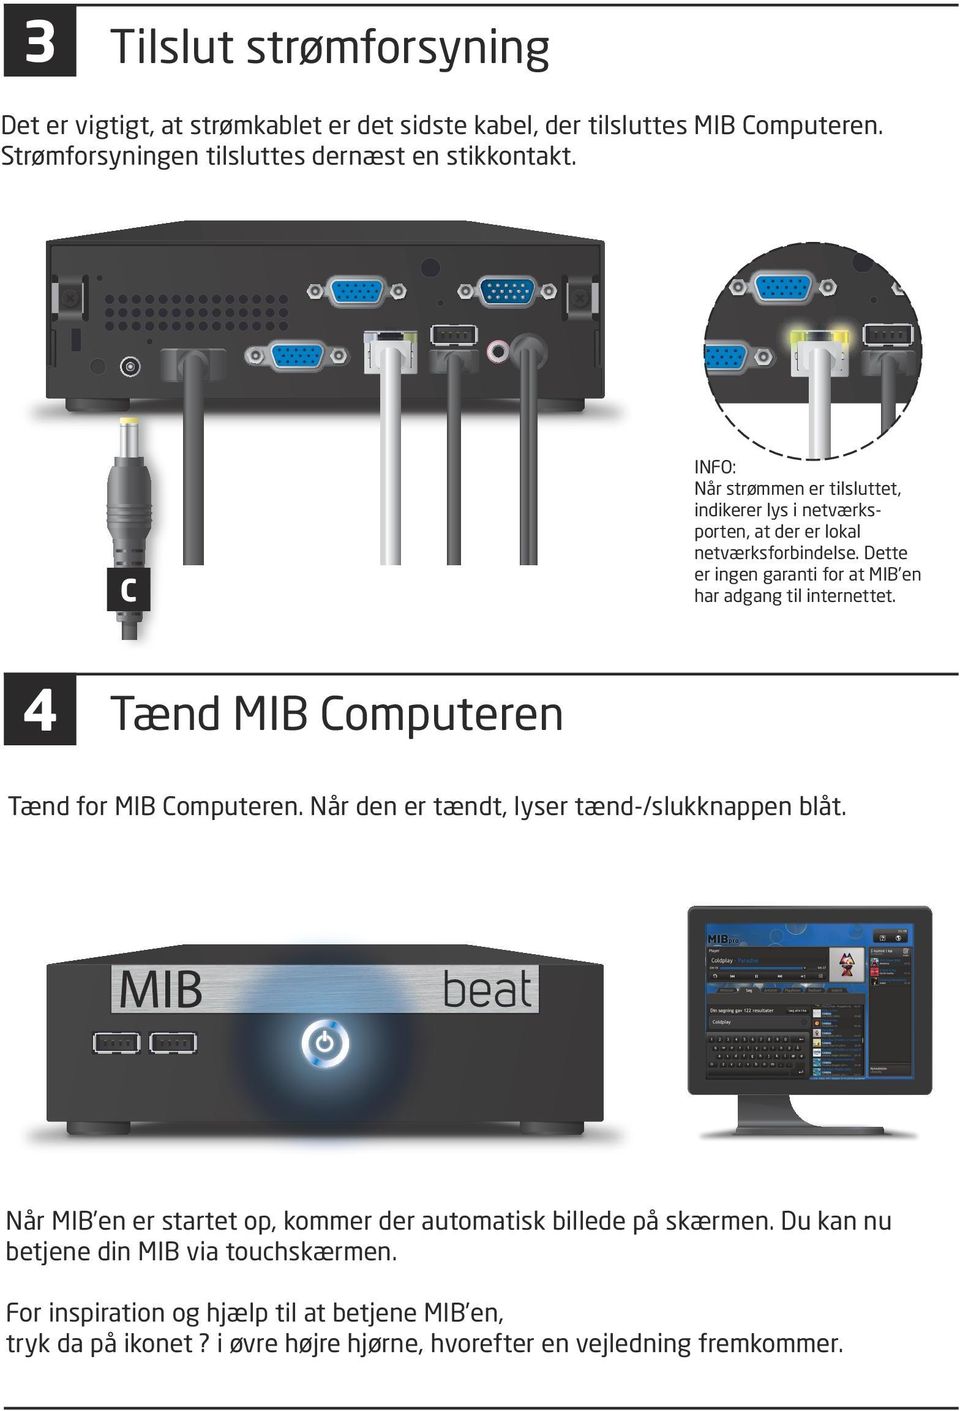 Dette er ingen garanti for at MIB en har adgang til internettet. 4 Tænd MIB Computeren Tænd for MIB Computeren. Når den er tændt, lyser tænd-/slukknappen blåt.